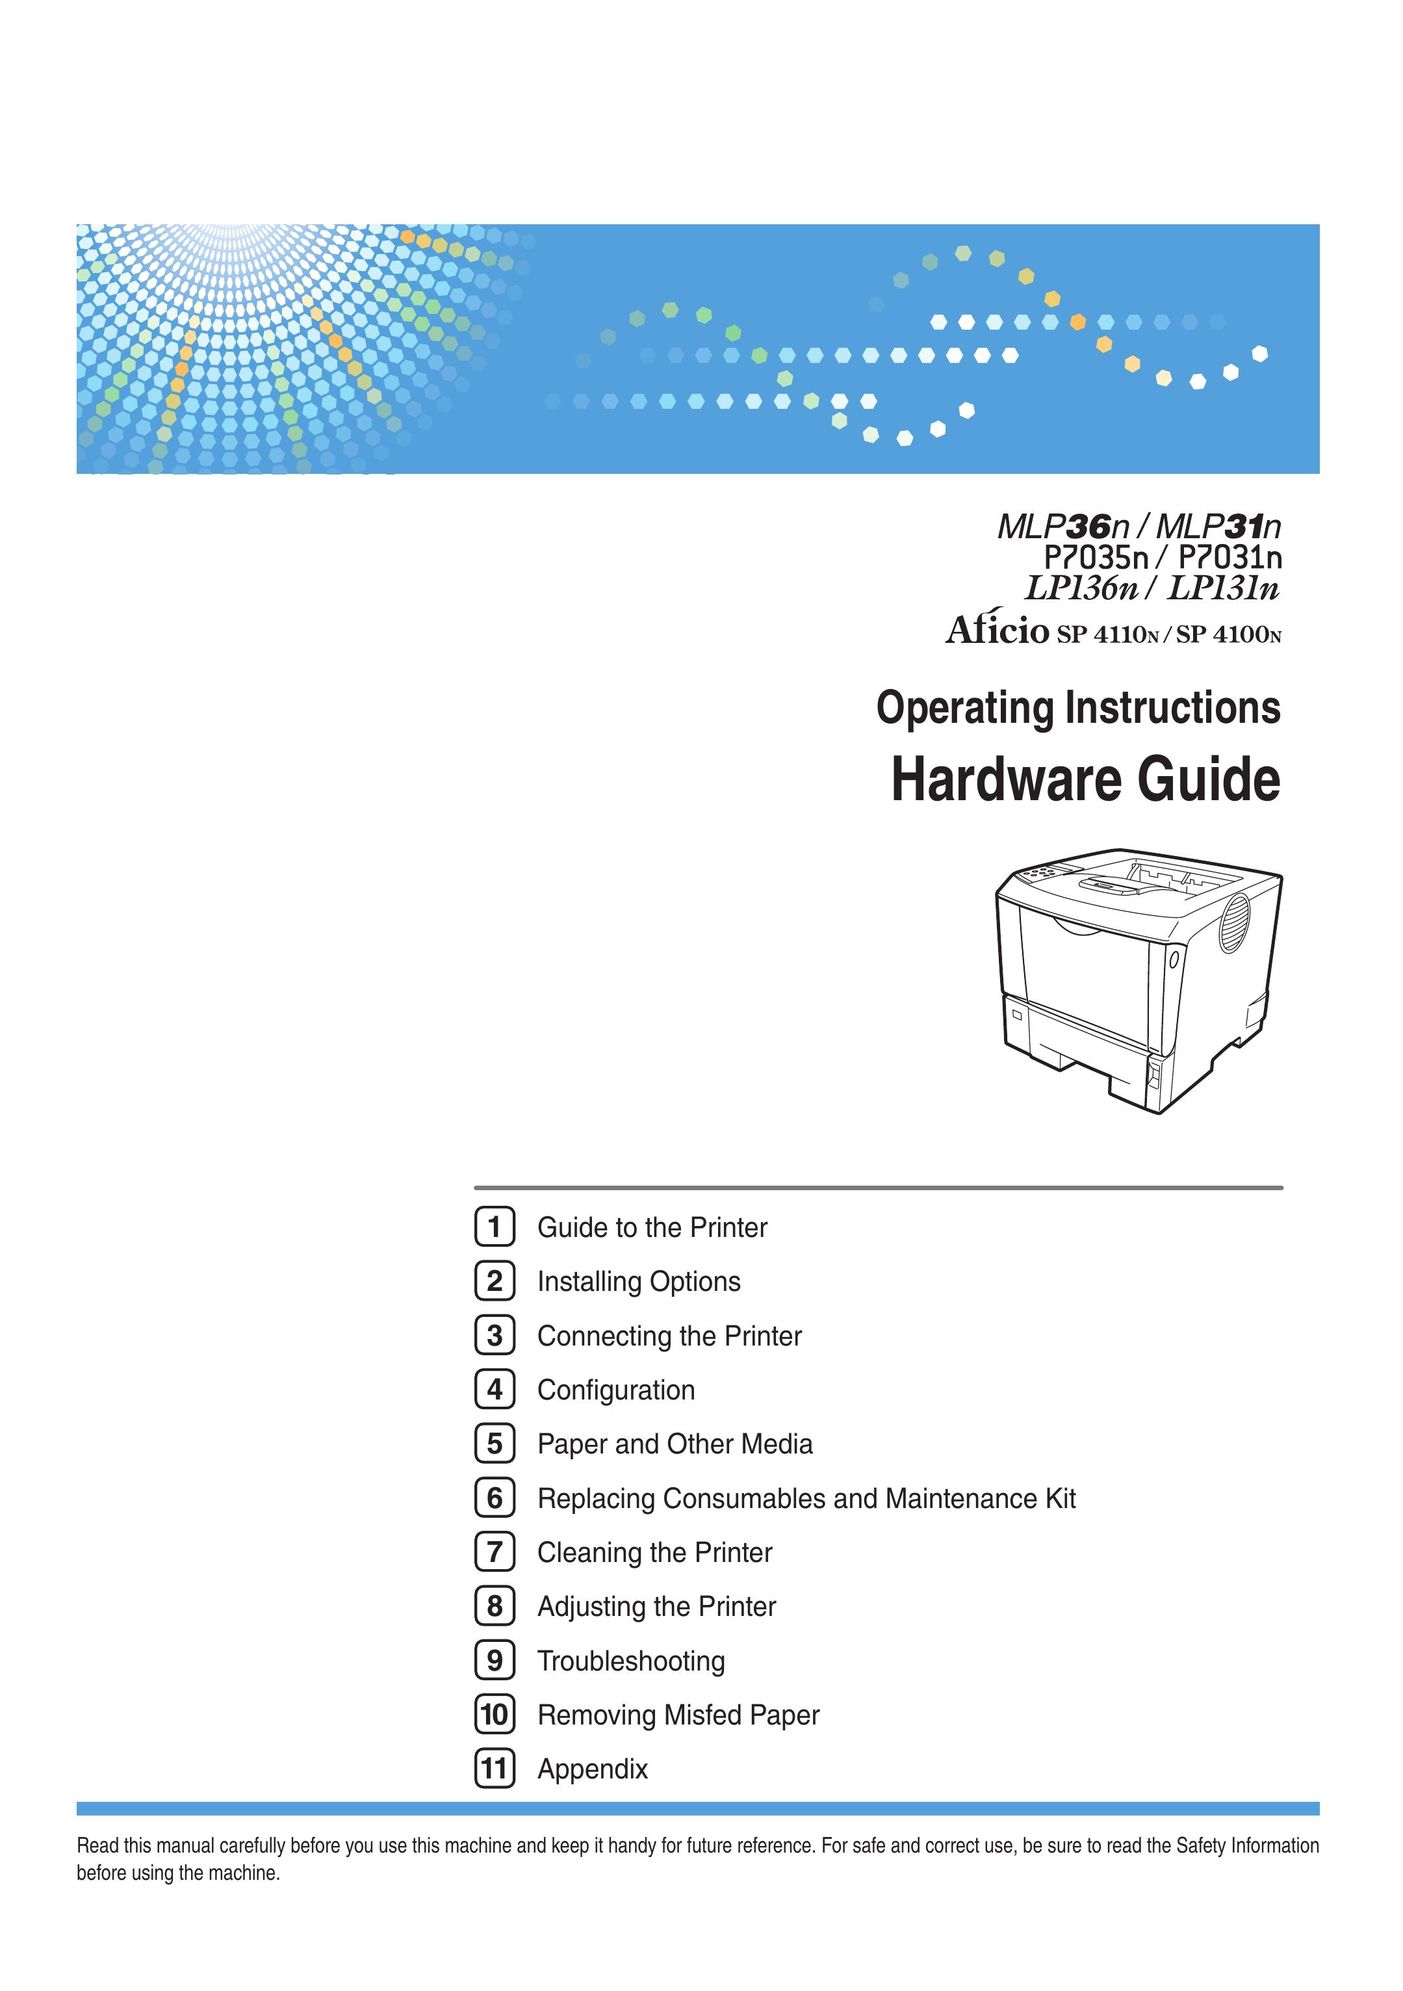 Apple 220-240 V Printer User Manual